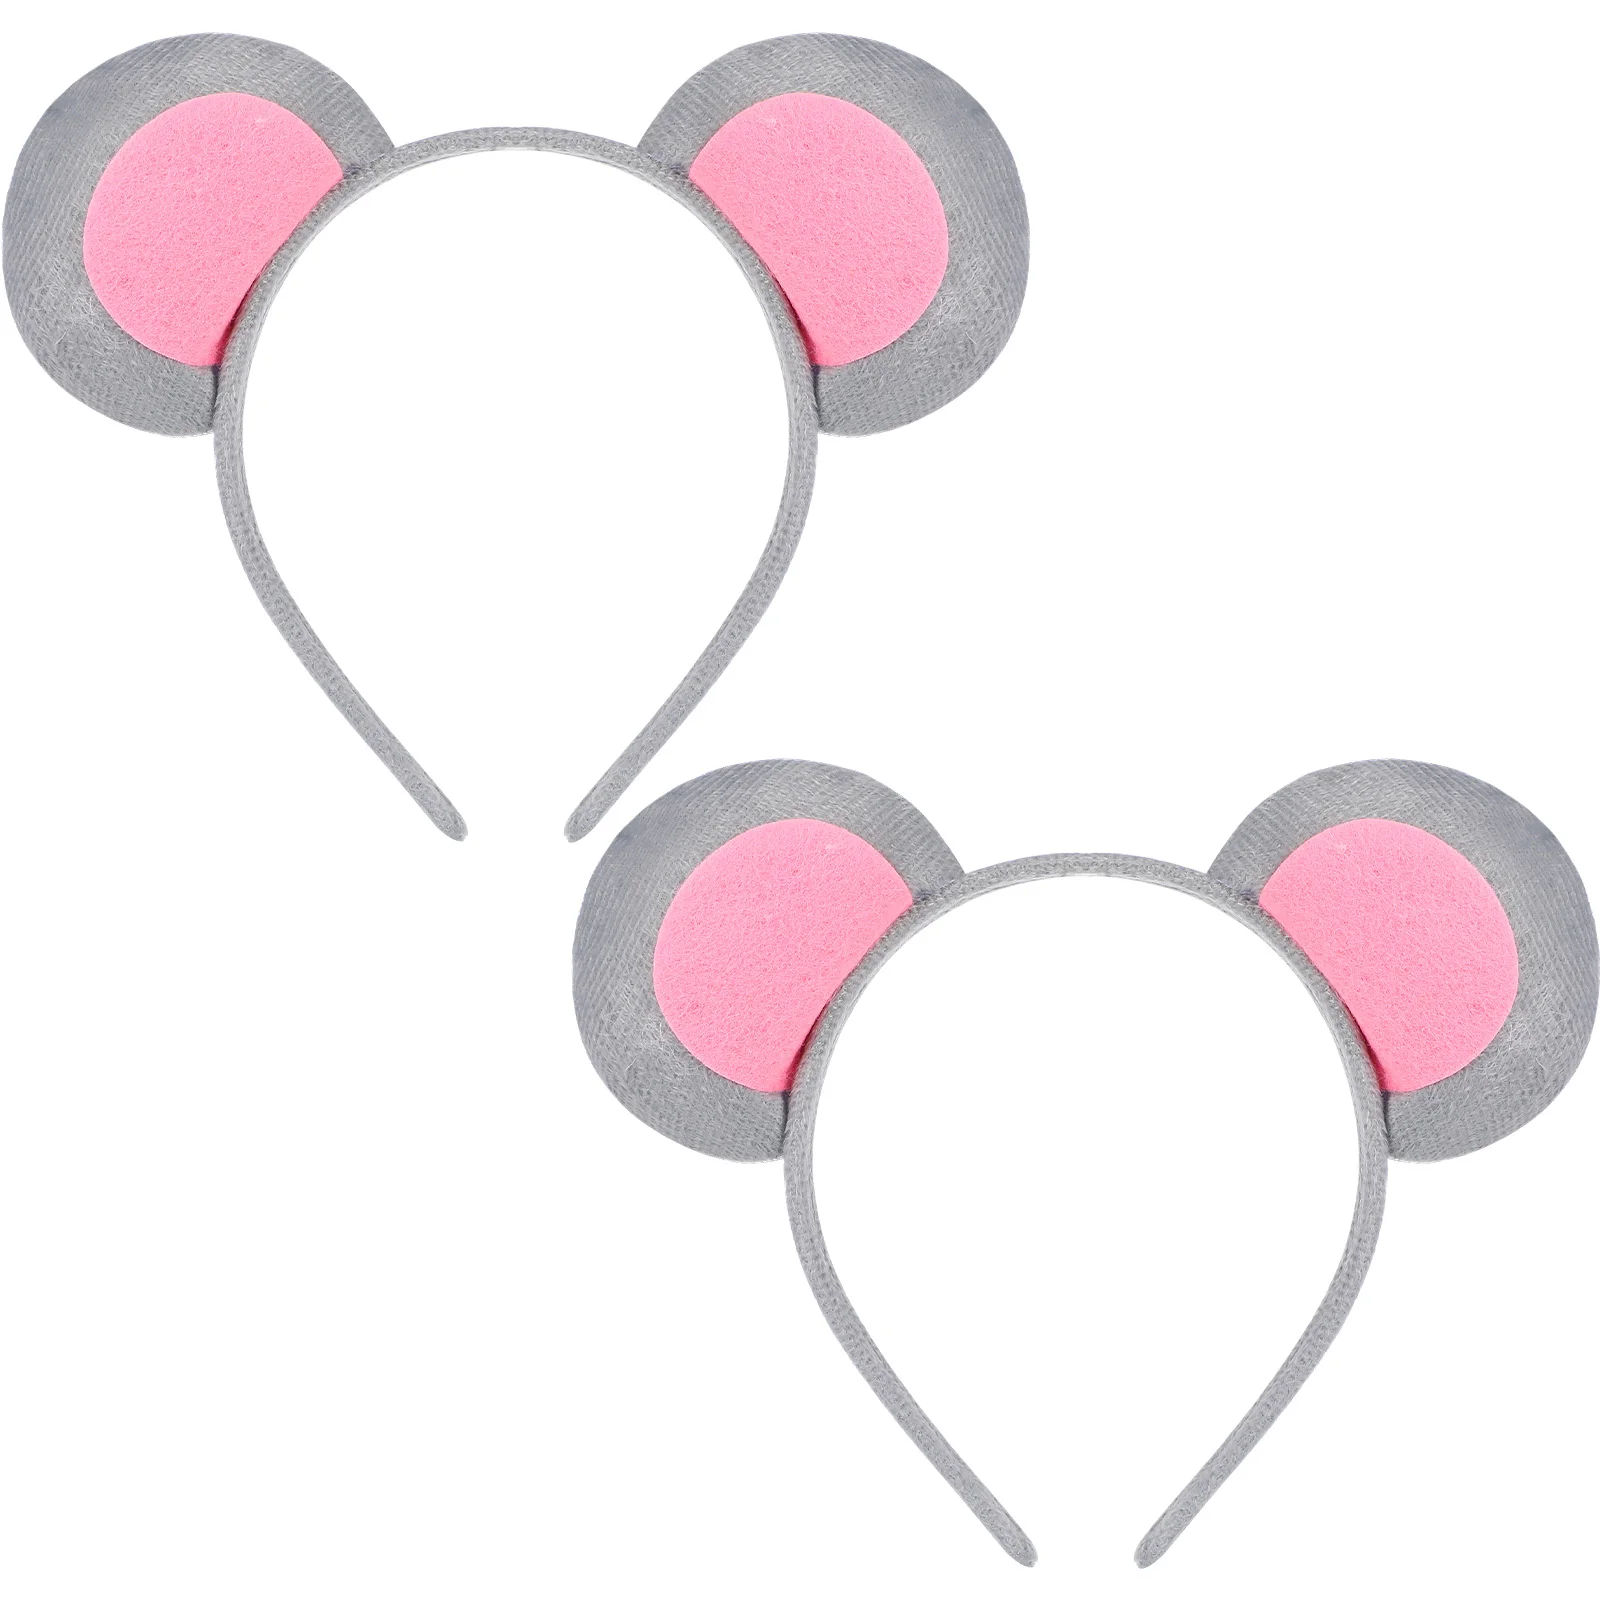 Plush Mouse Ear Headband 2Pcs Ear Headbands Mice Costume Ears Headbands Kitten Headwear Accessories for Kids Party Favor (